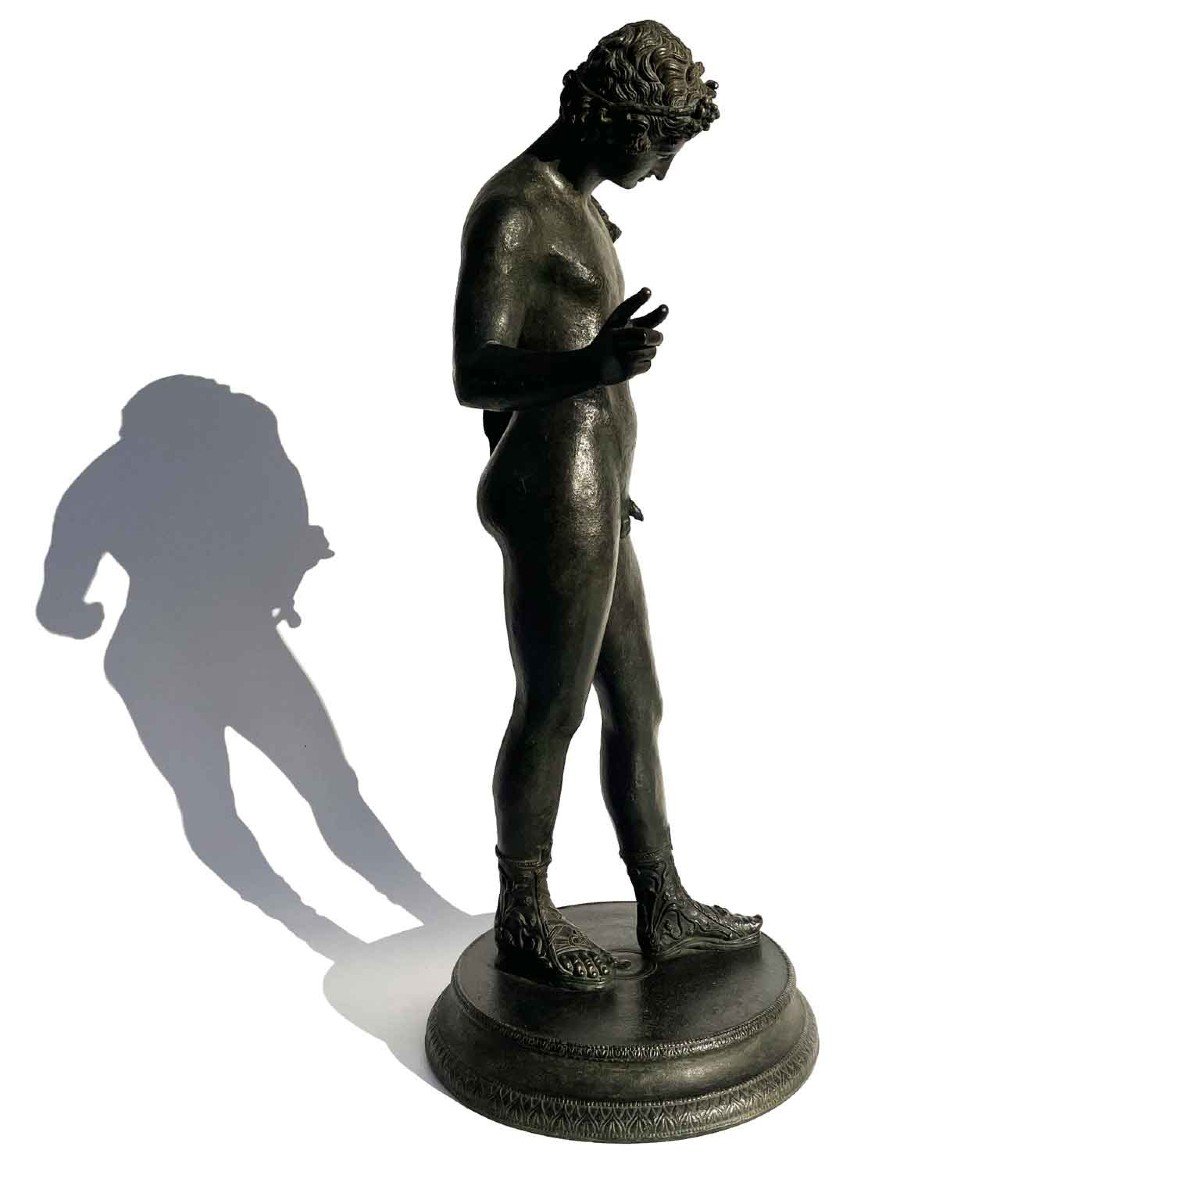 Narcisse Sculpture en bronze du début des années 1900, la figure est une reproduction du bronze